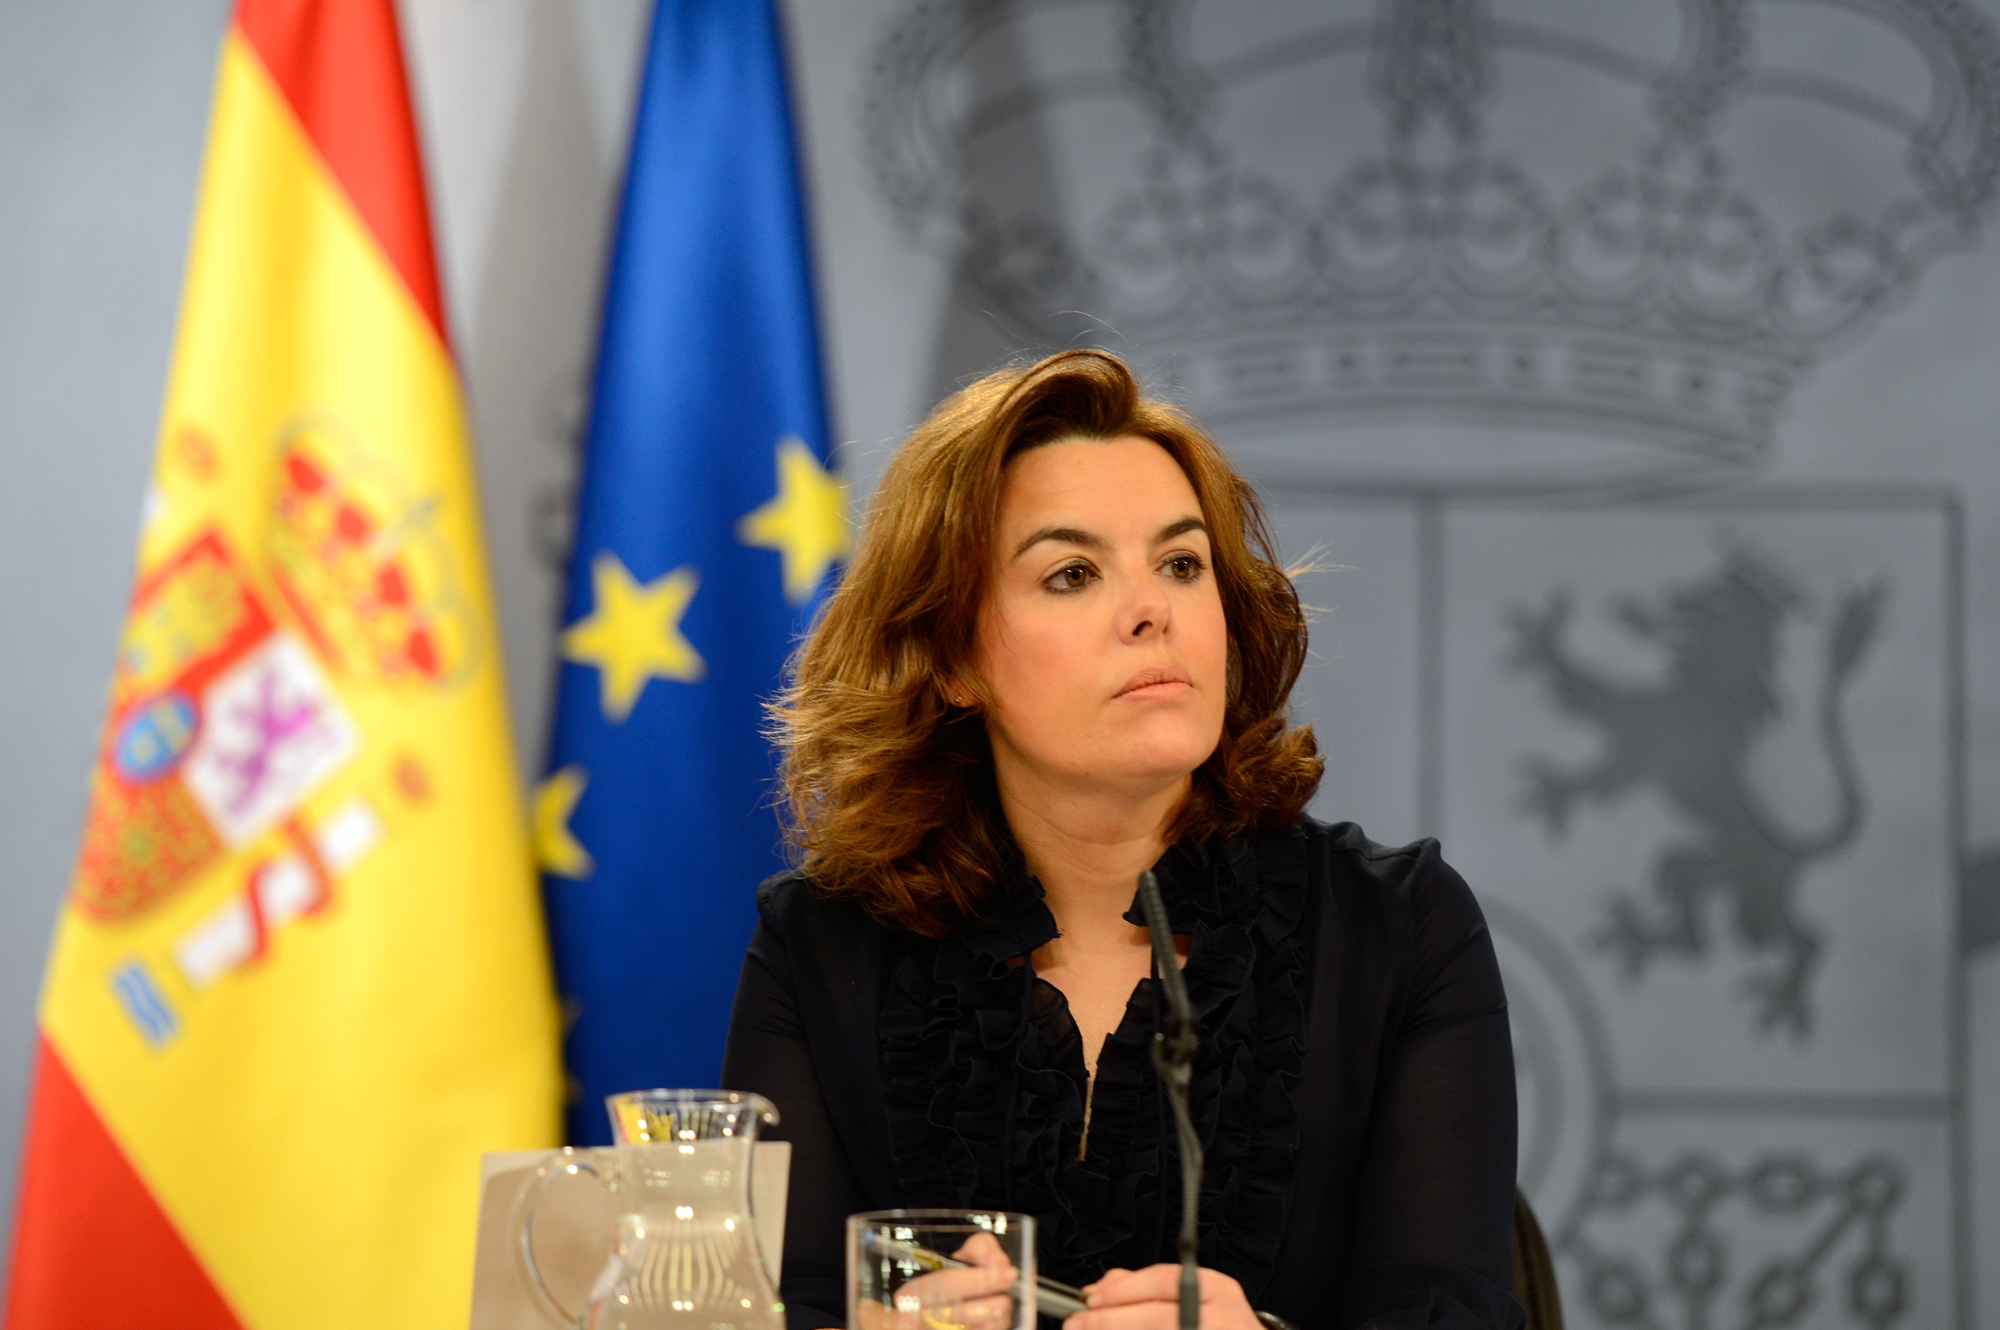 El Govern espanyol es compromet a presentar l’evaluació del Pla de Drets Humans al Congrés i a posar en marxa els treballs d’elaboració de la nova estratègia